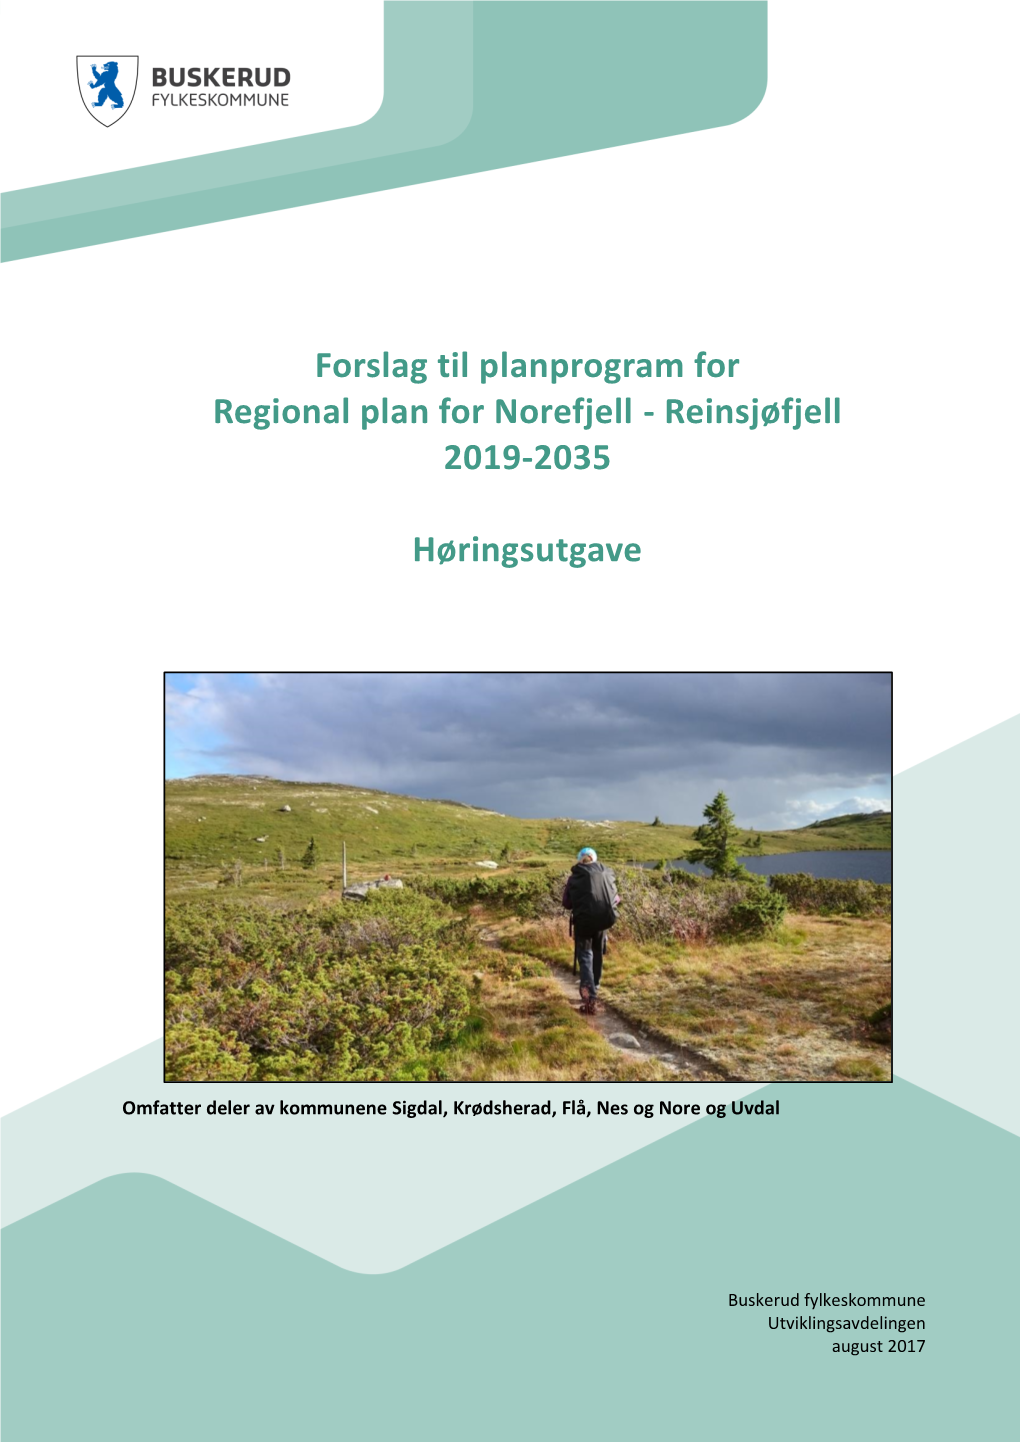 Forslag Til Planprogram for Regional Plan for Norefjell - Reinsjøfjell 2019-2035